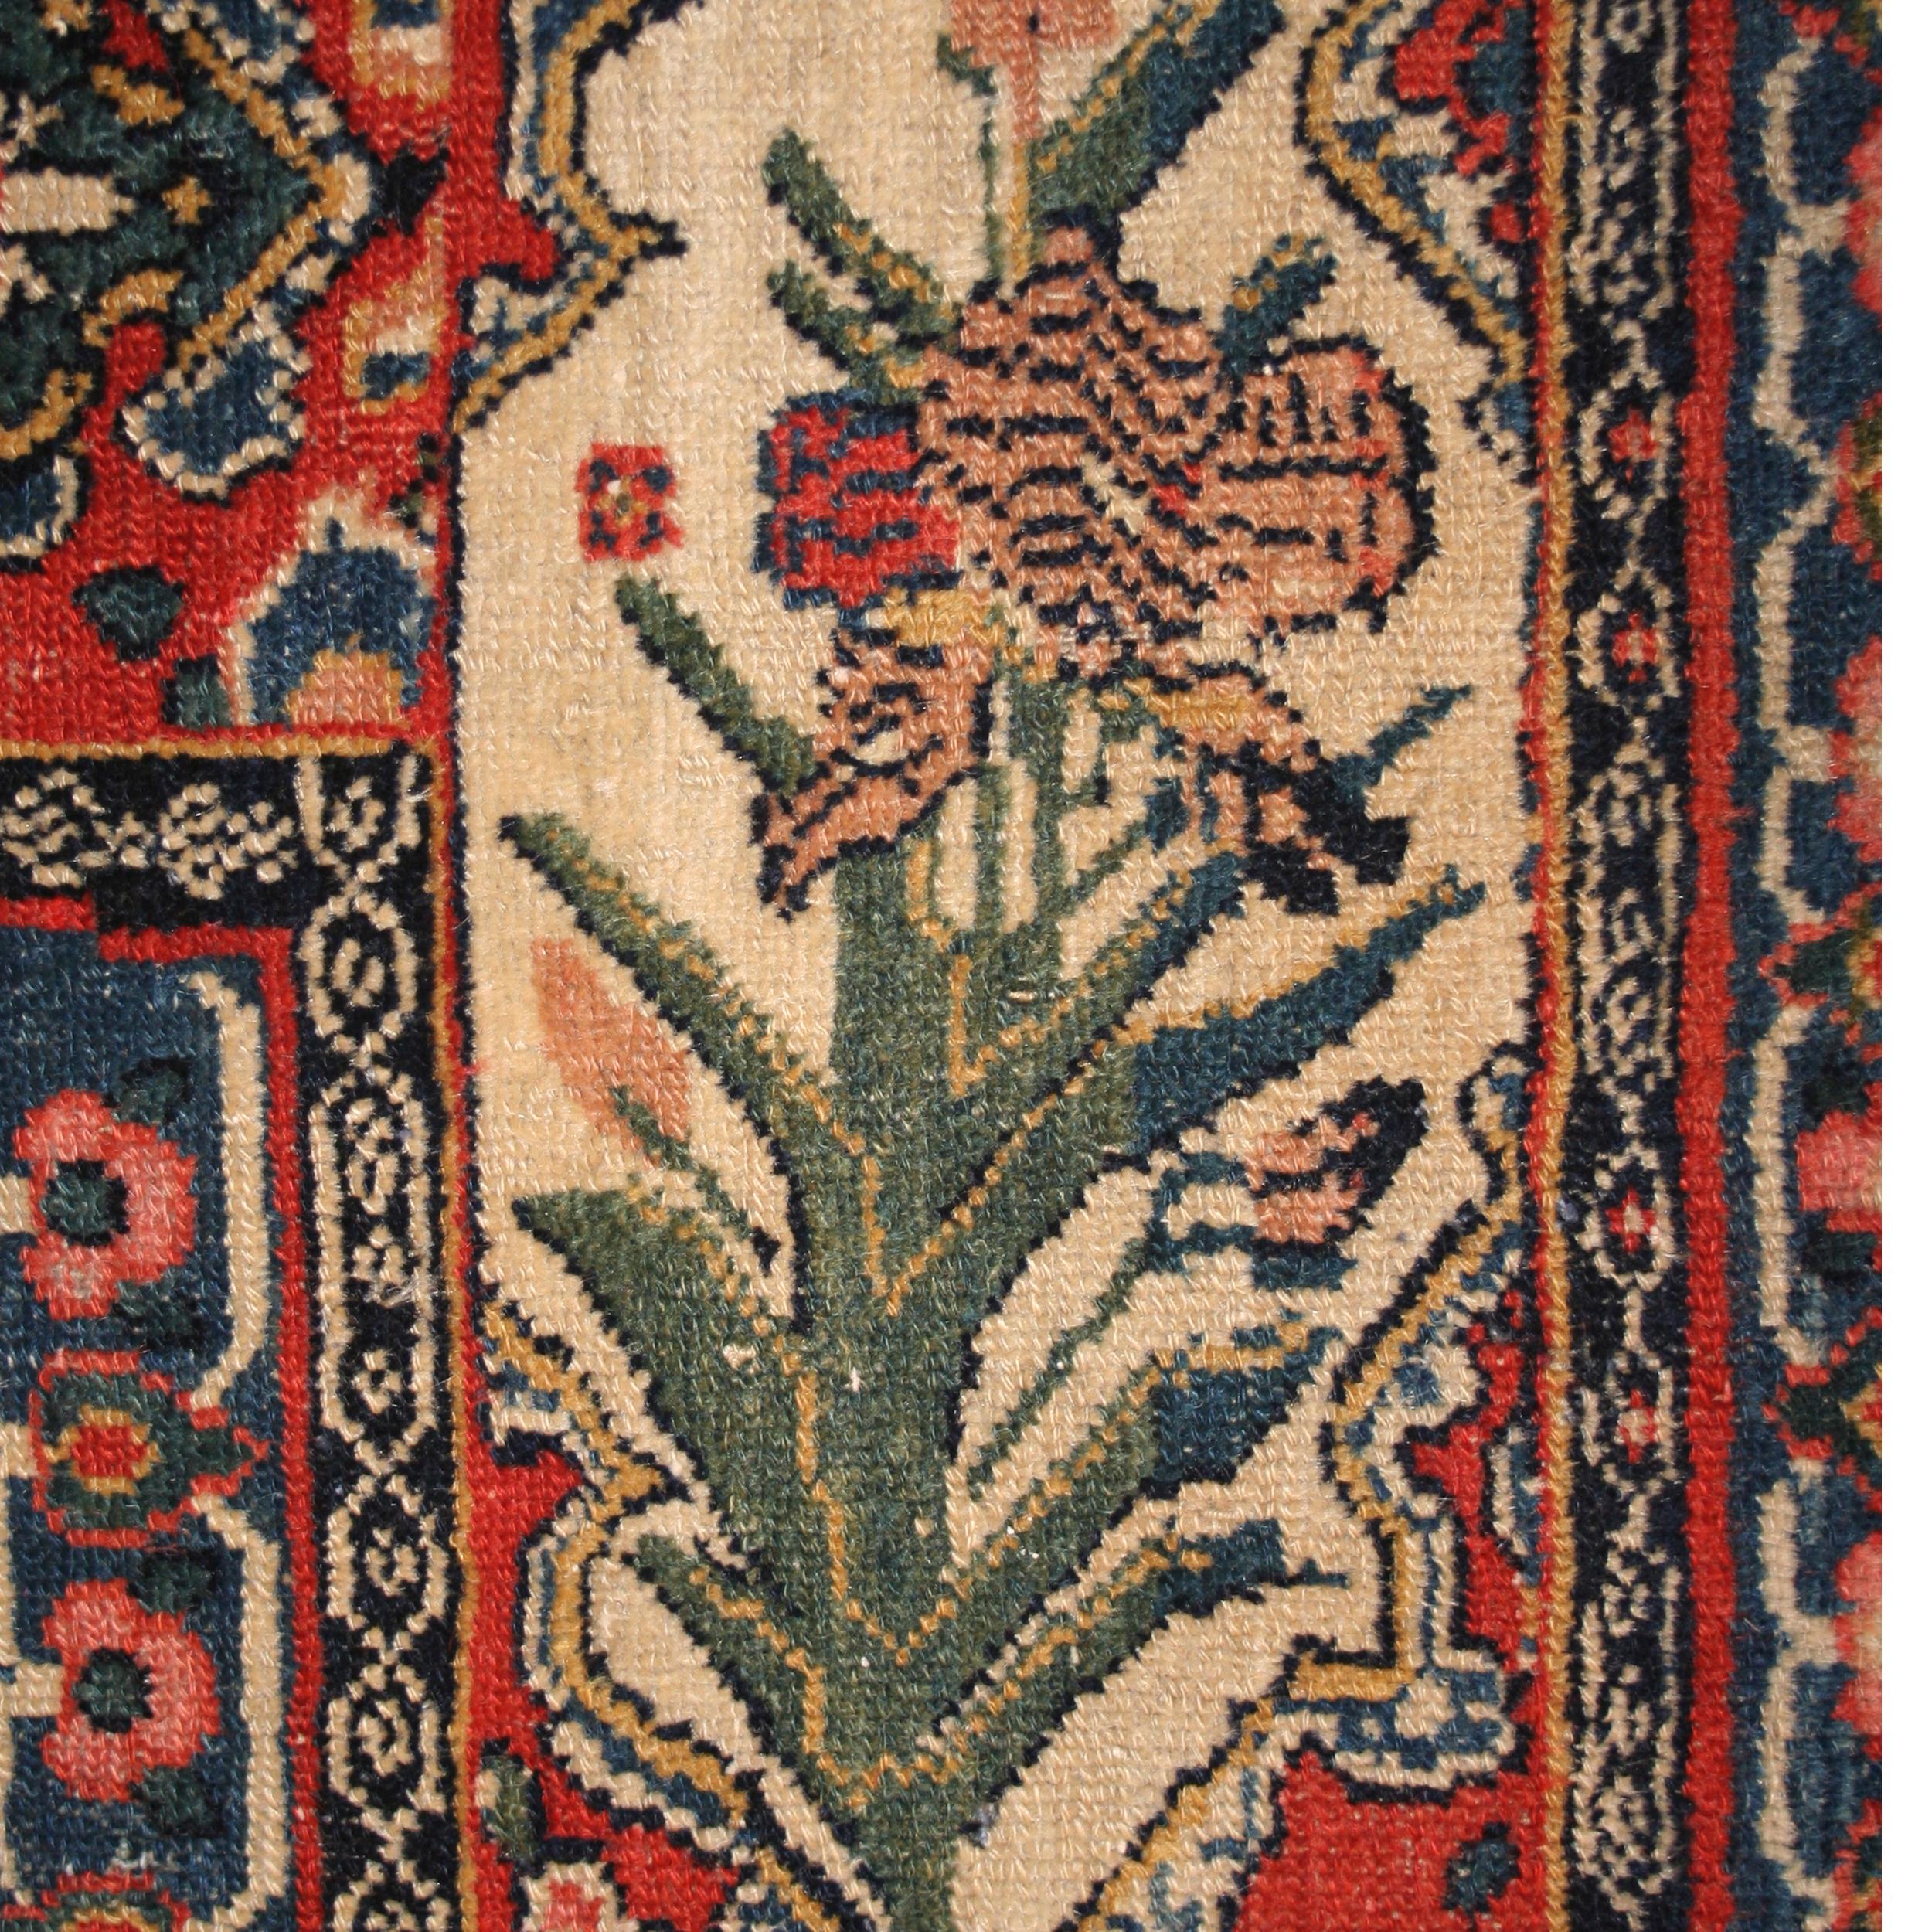 Die feinen Teppiche von Senneh stellen die luxuriösesten Knüpfungen der Qajar-Ära dar. Diese werden fast immer in kleinen Formaten gewebt, was dieses charmante Beispiel in Zimmergröße besonders selten und ungewöhnlich macht. Hier schwebt ein großes